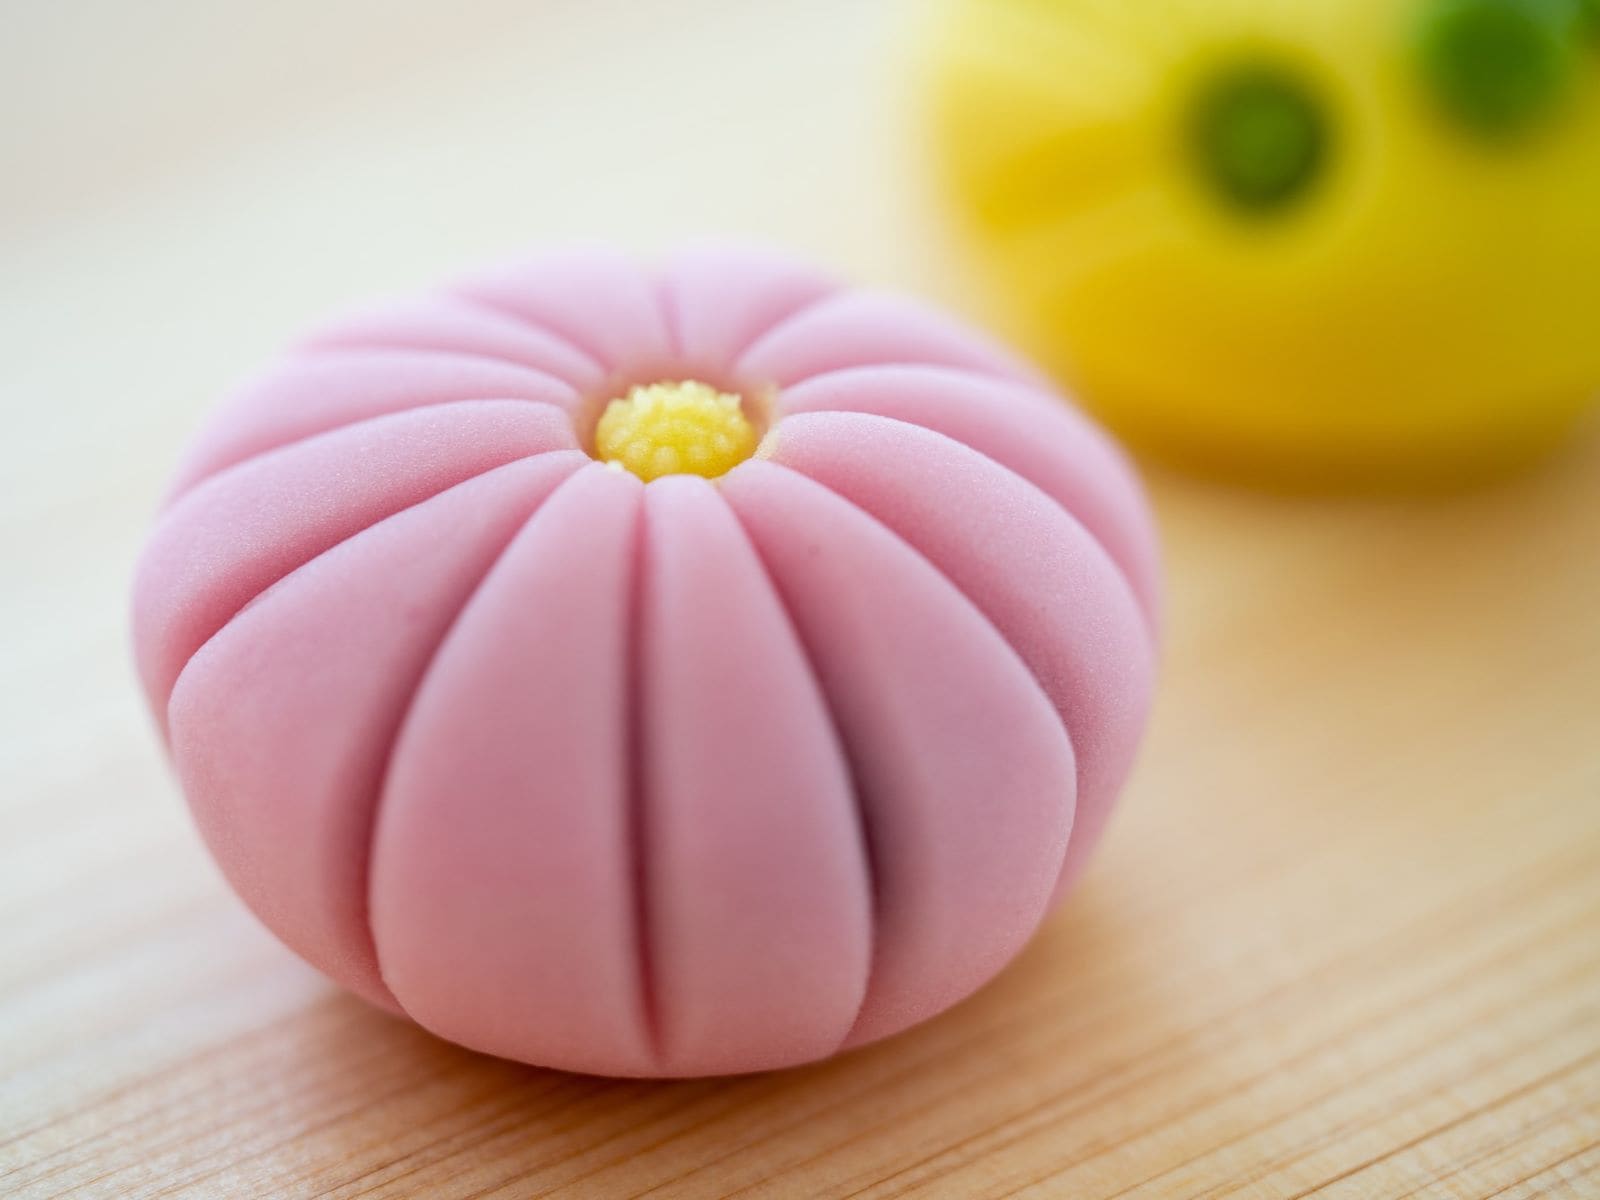 季節の移ろいを繊細な職人技で表現した「上生菓子」は、和スイーツの代表格